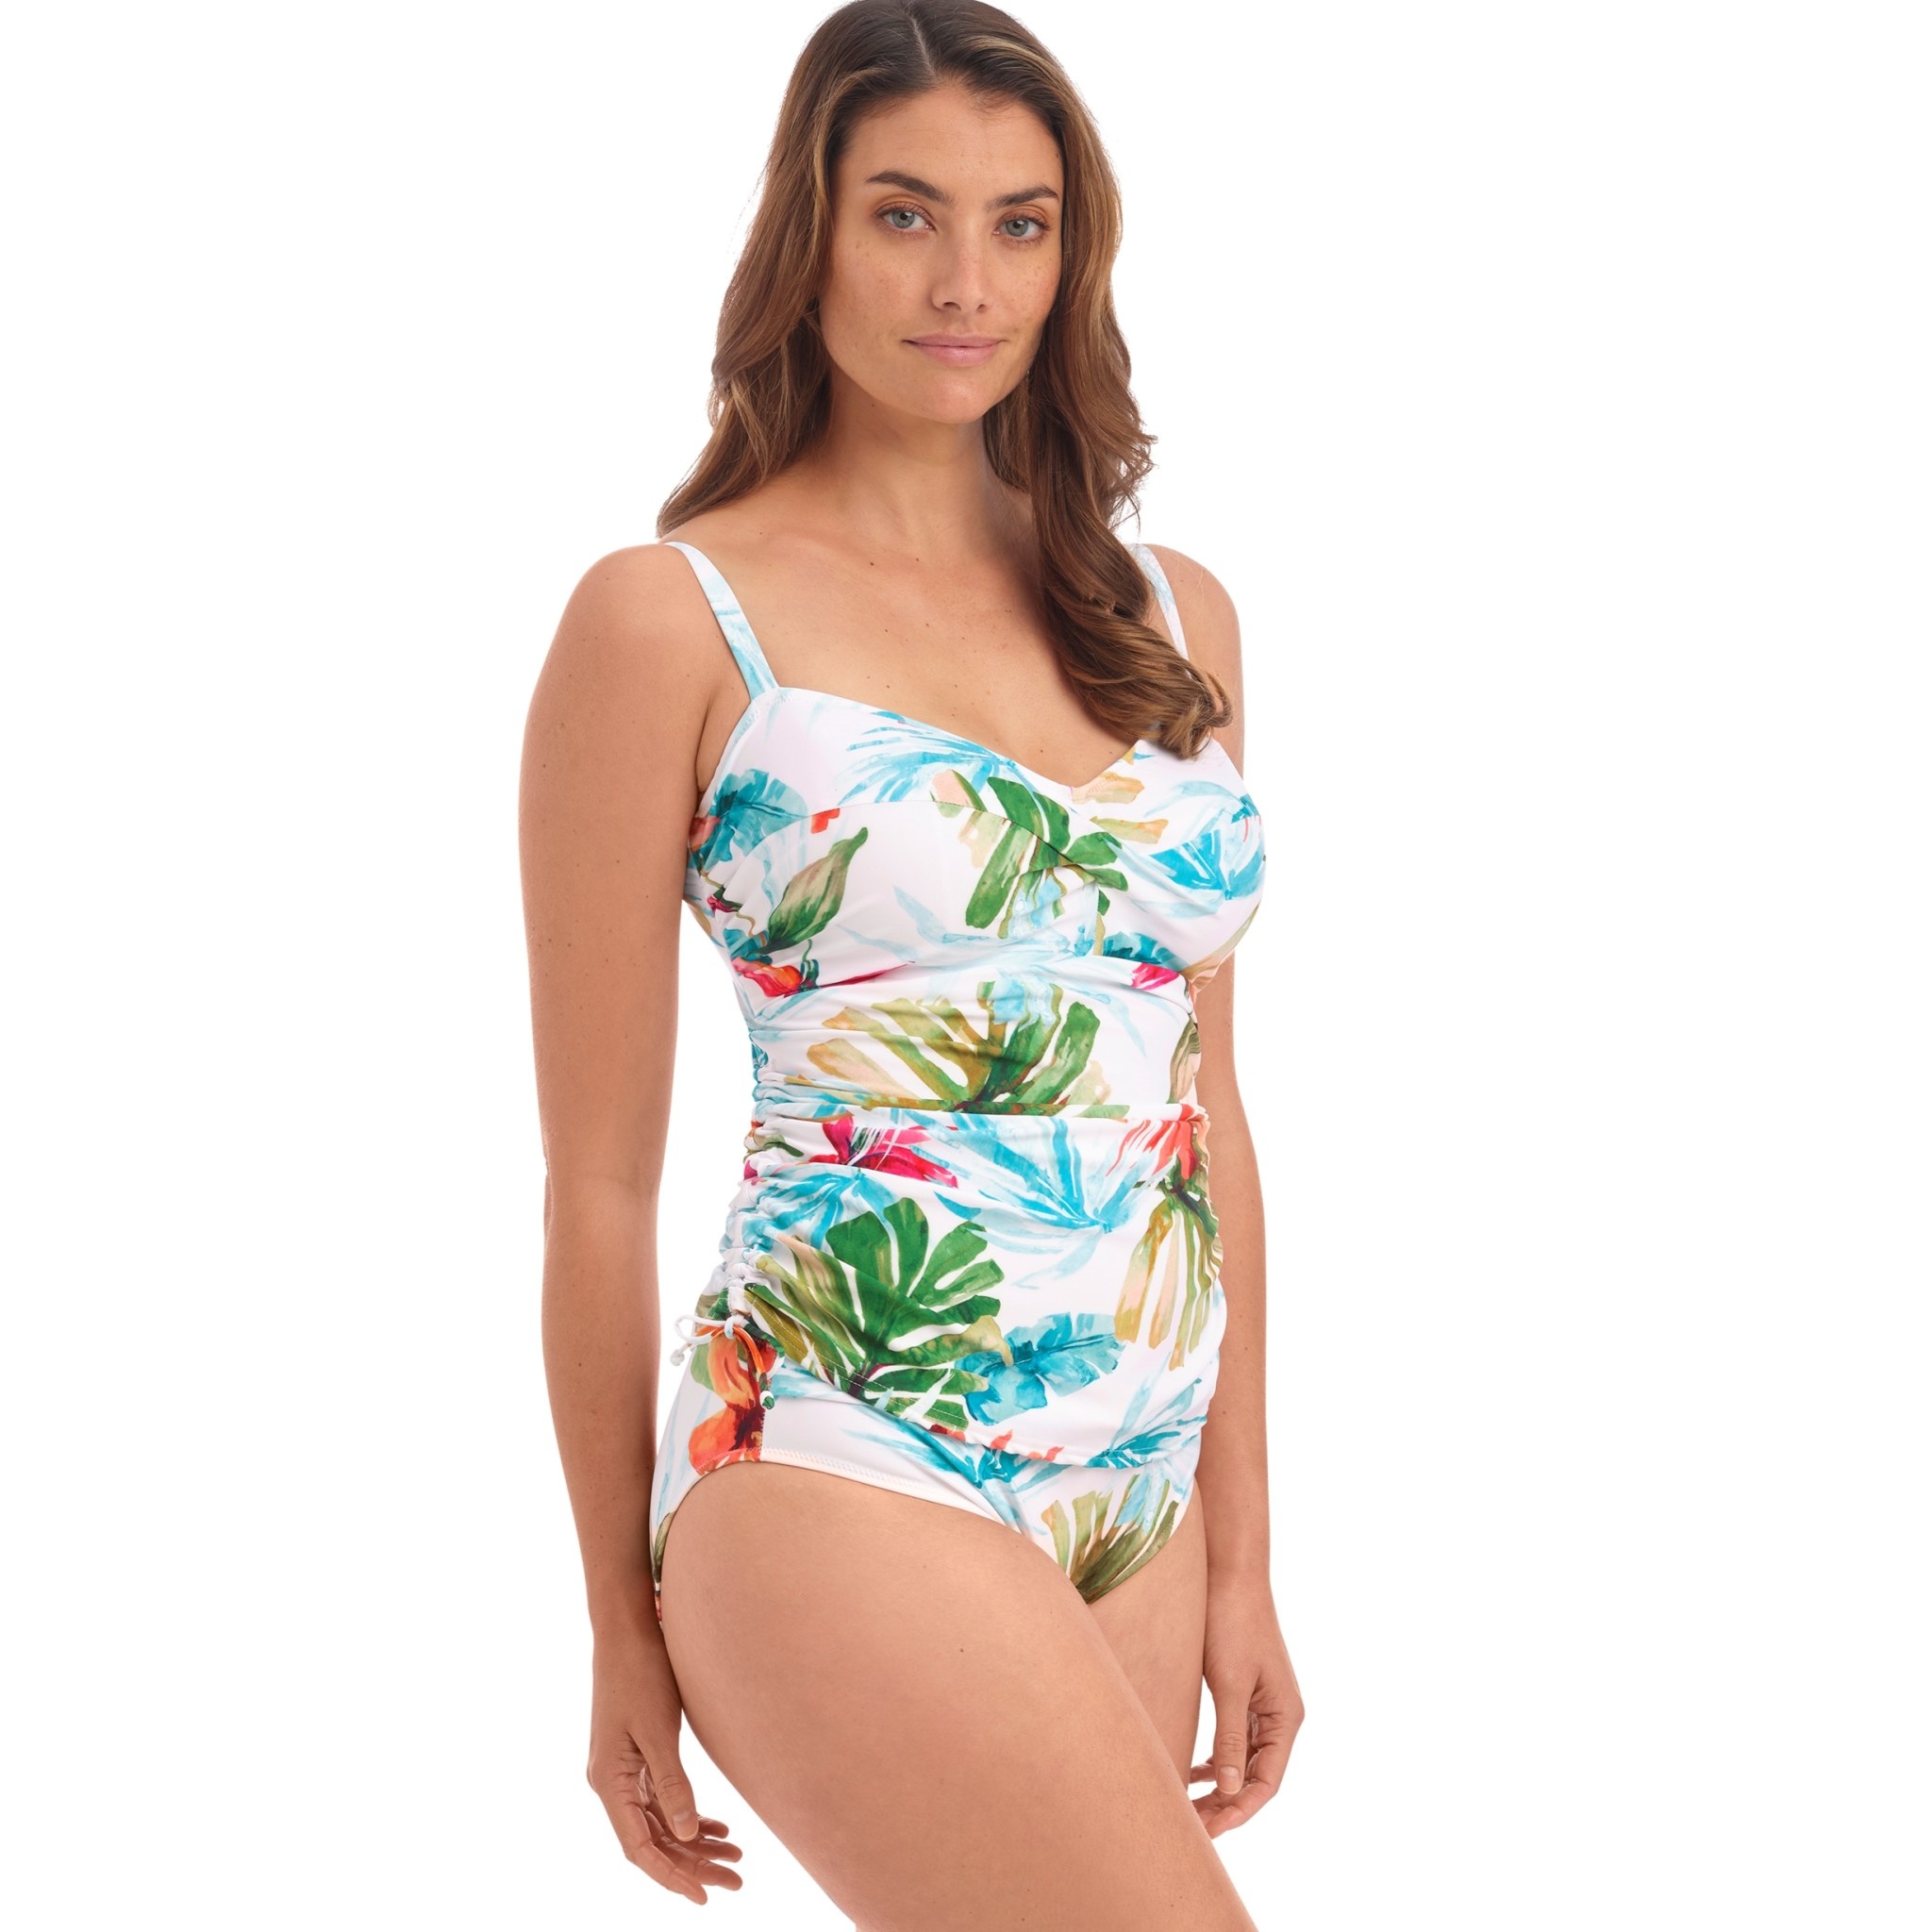 El Mar Full Coverage Bikini Top With Knot S1663B1654 – Agua de Coco